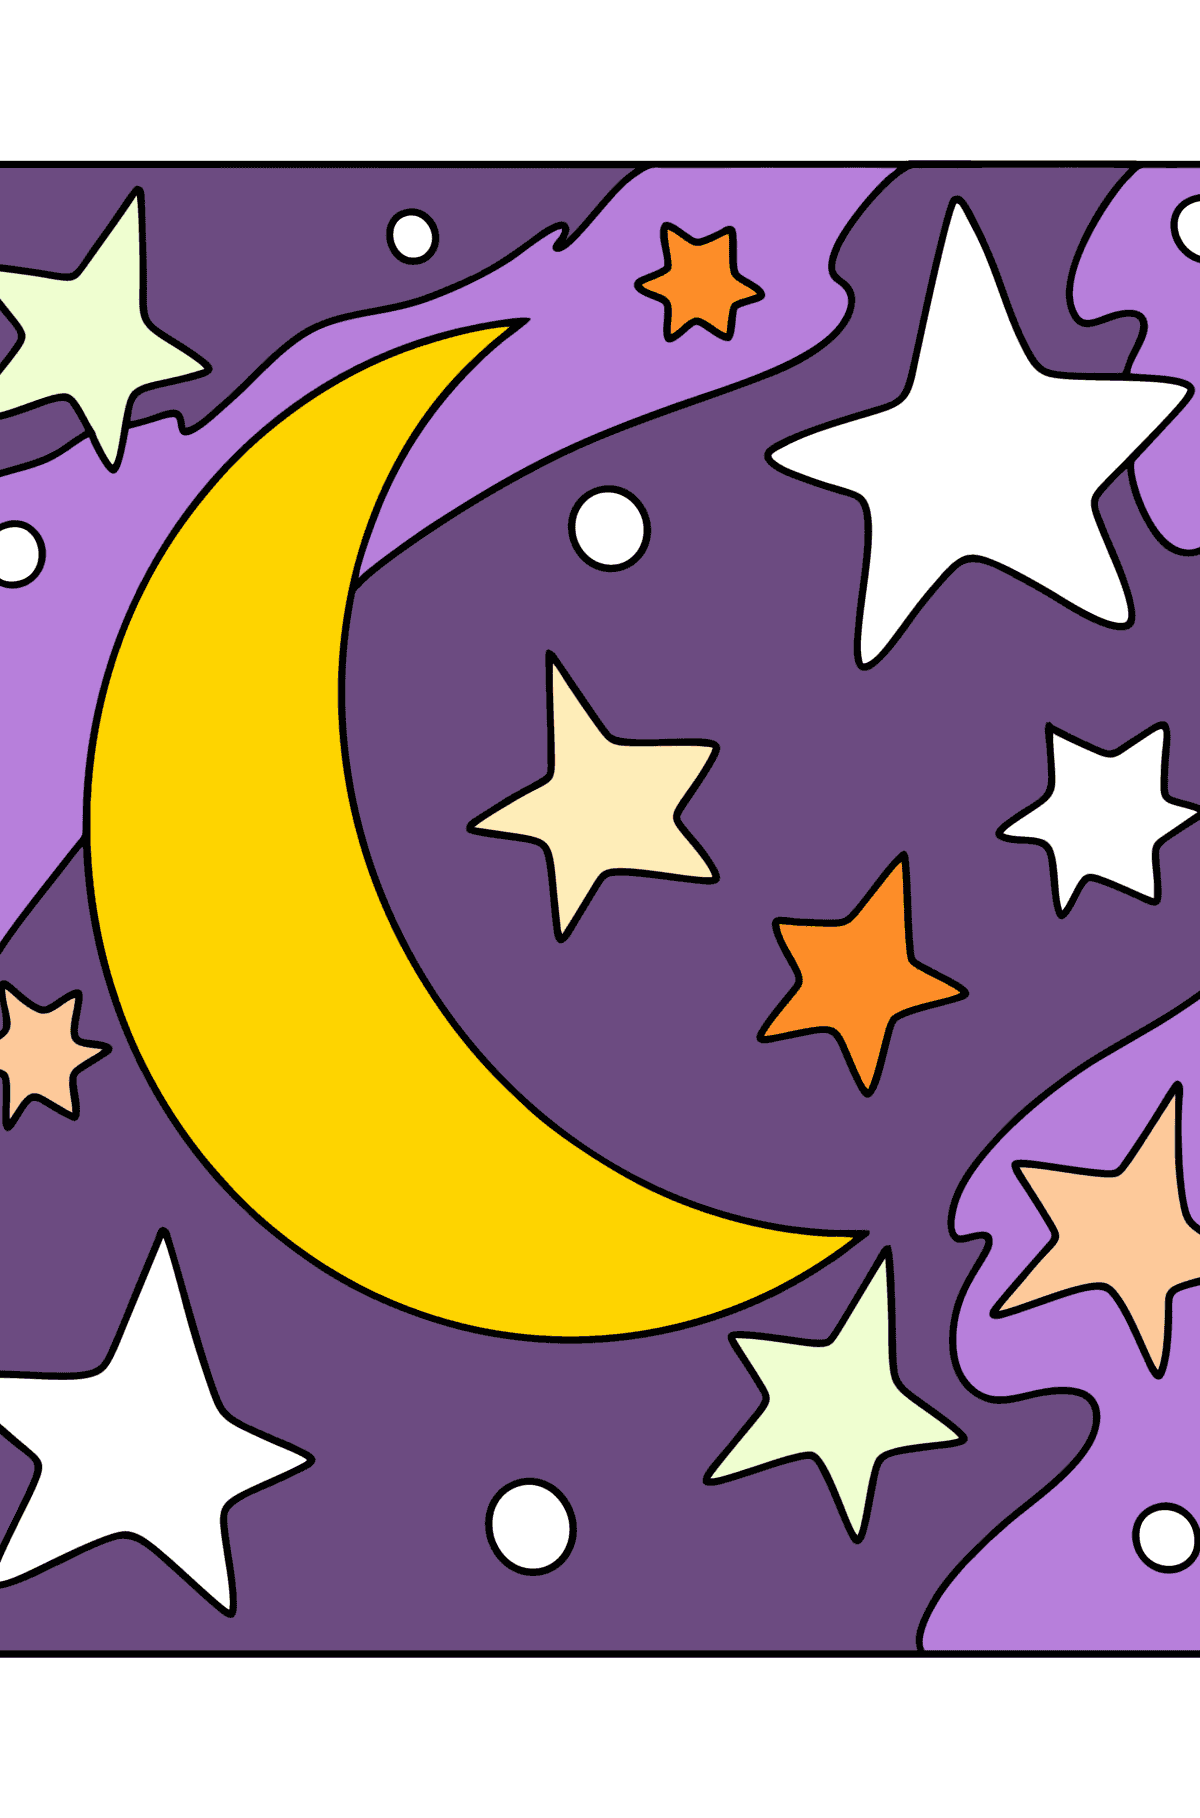 Kolorowanka księżyc i gwiazdy - Kolorowanki dla dzieci